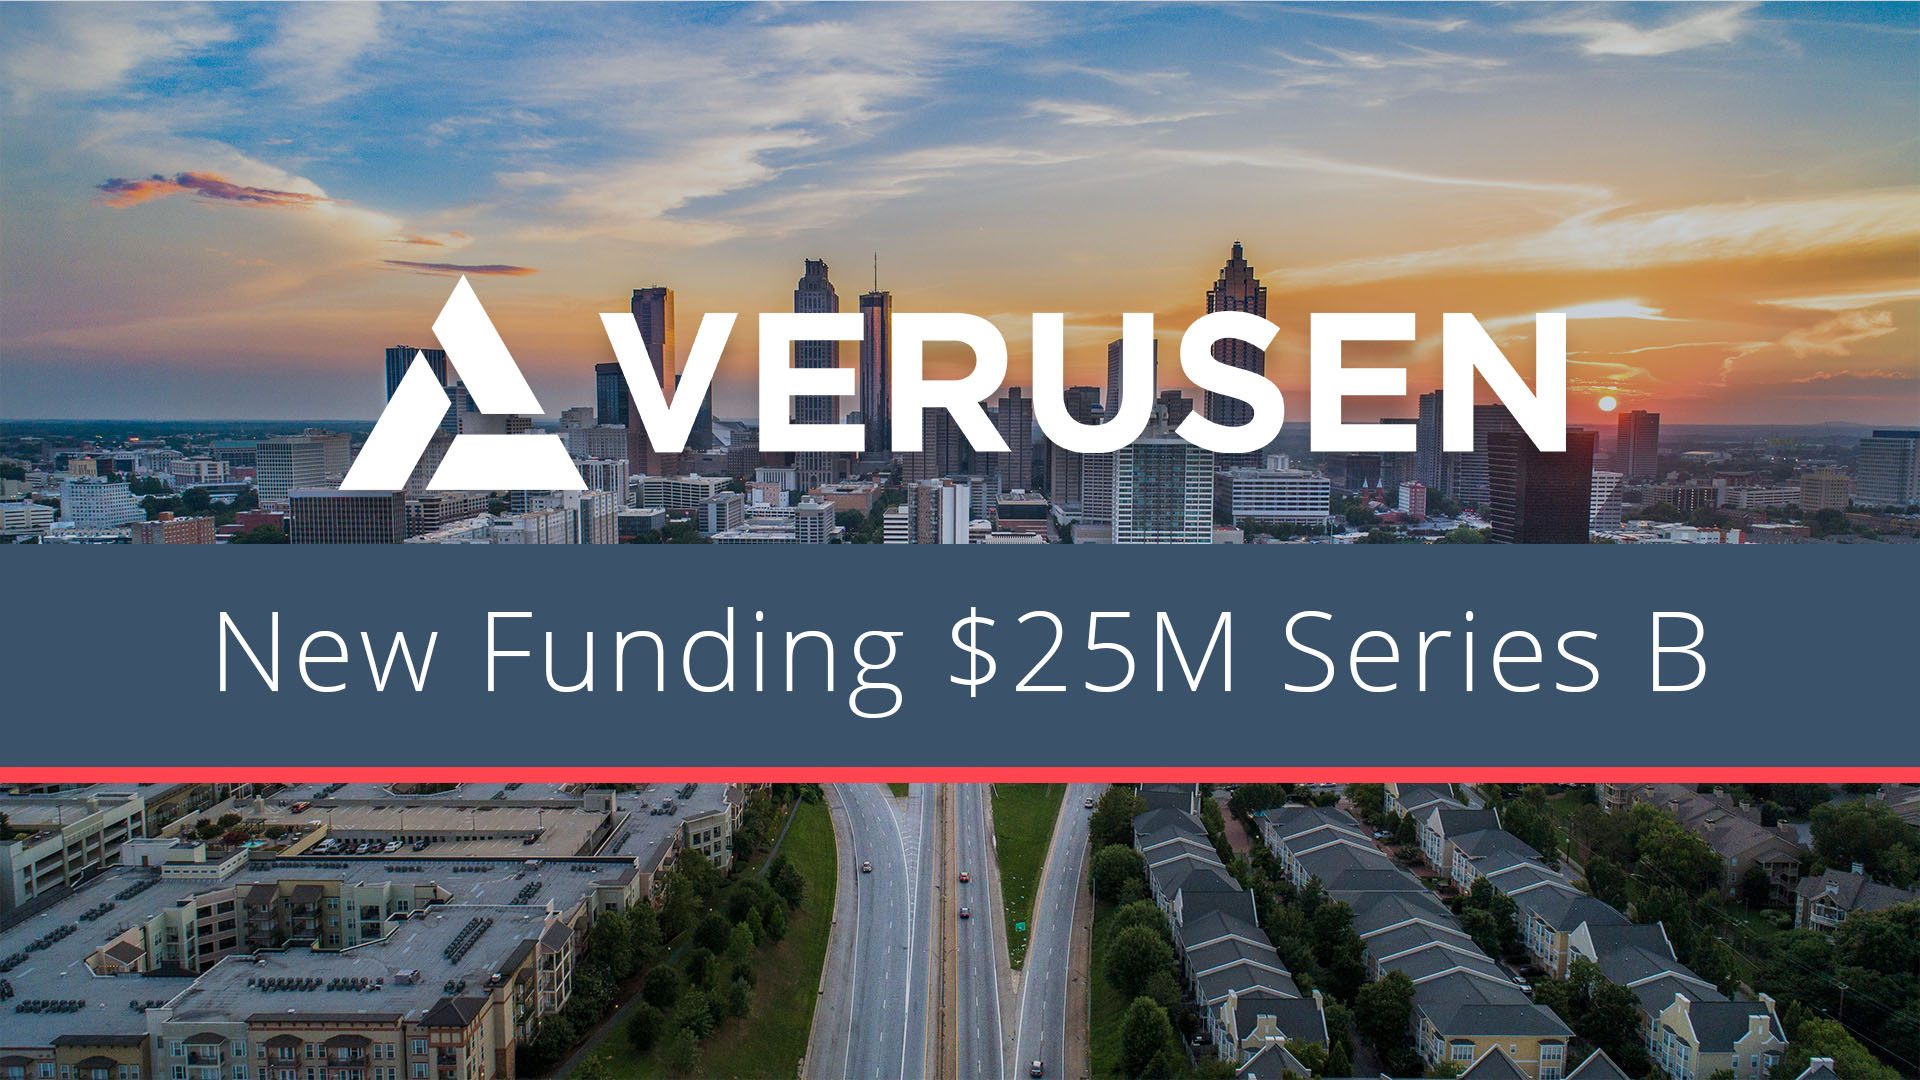 New Funding for Verusen